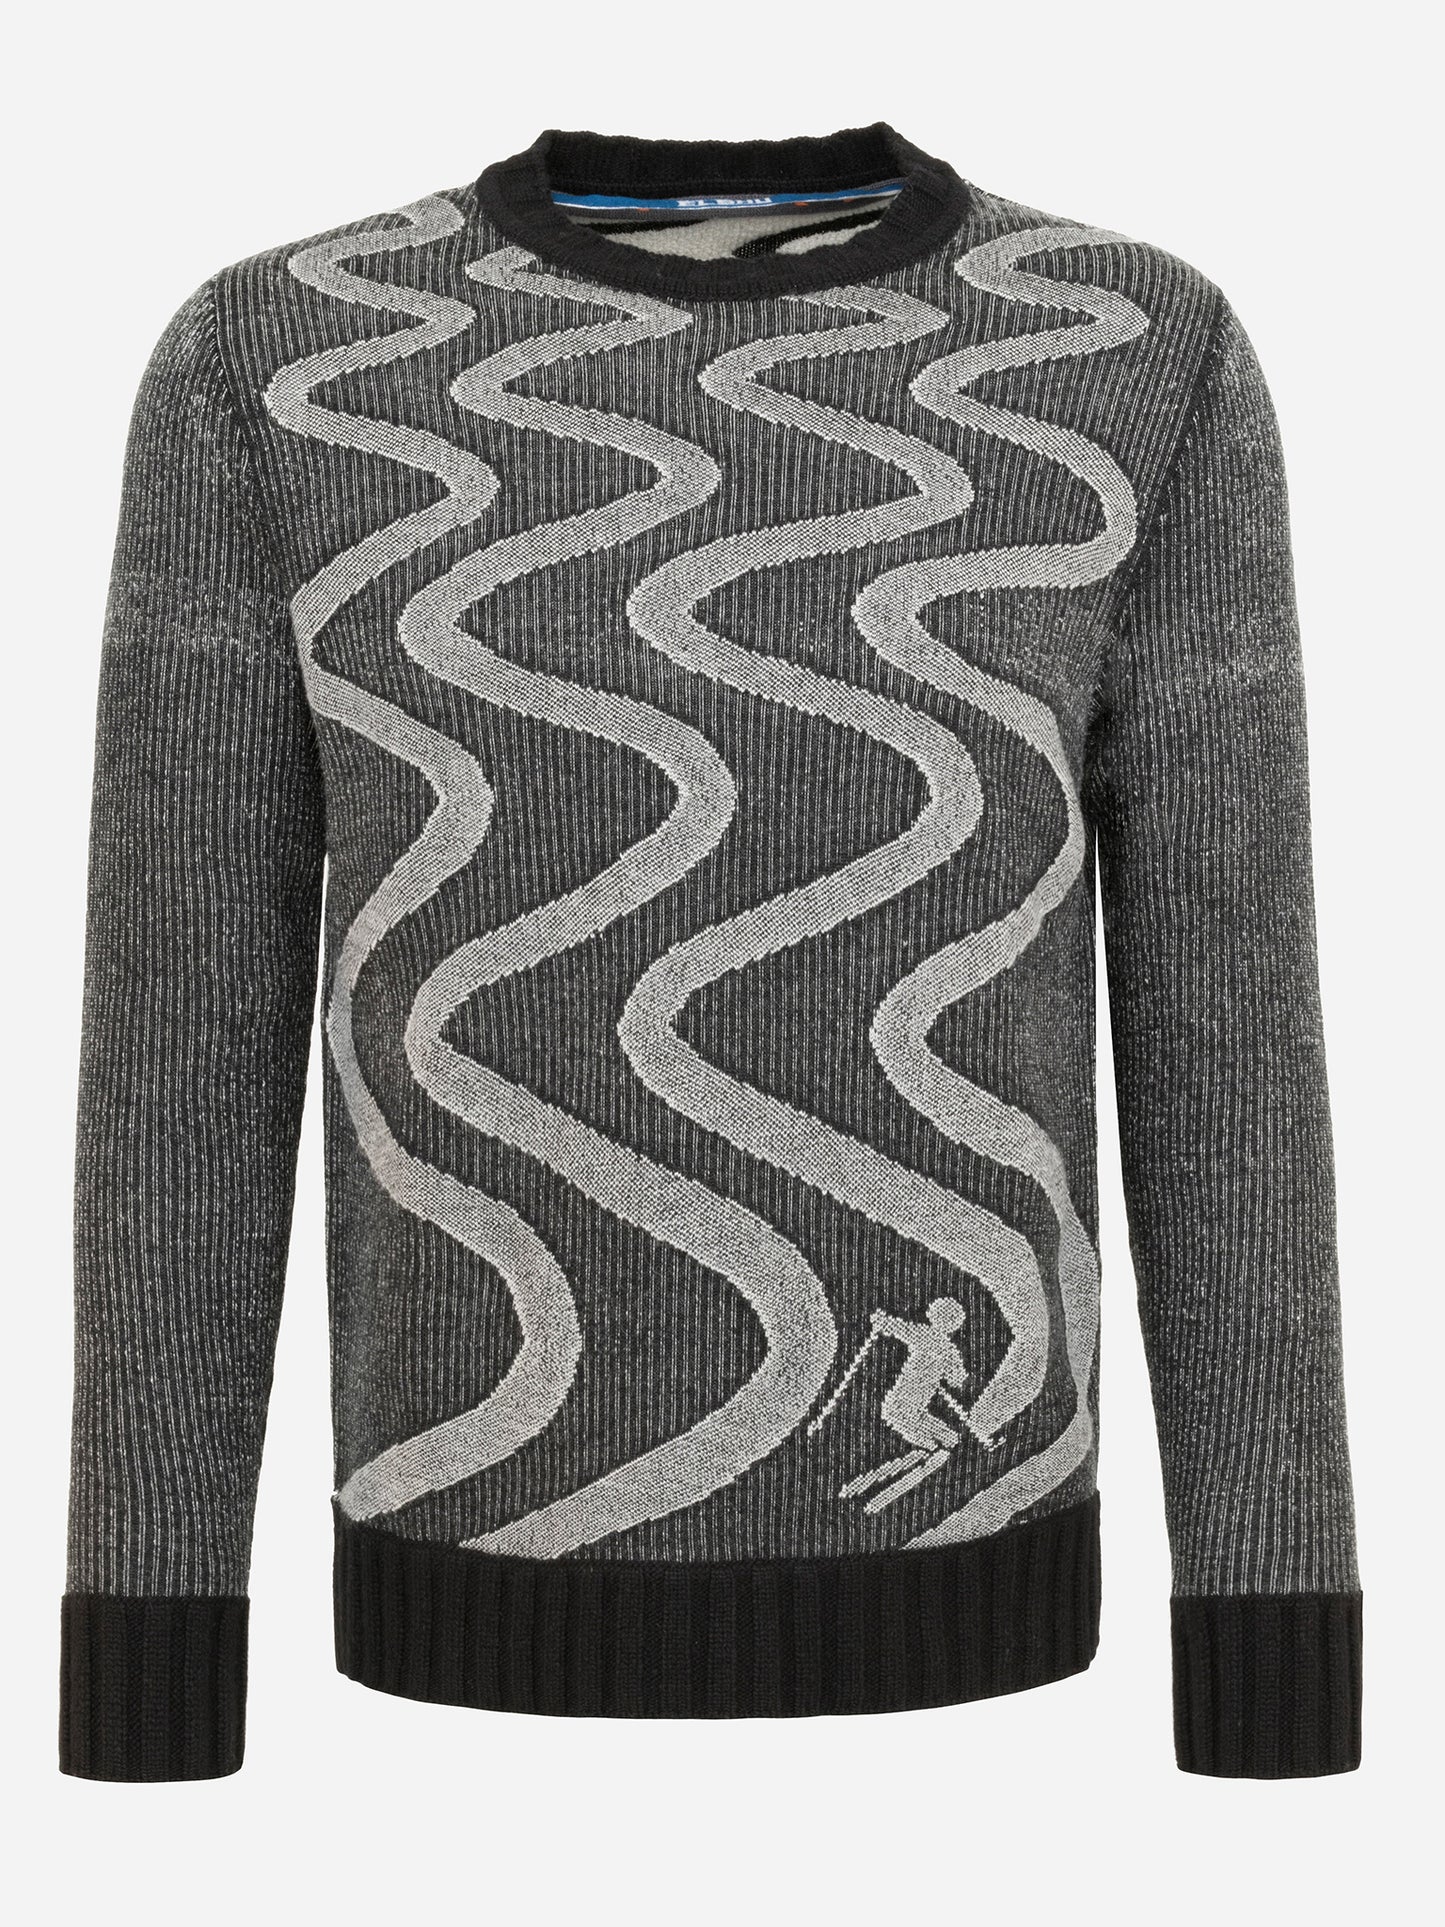 Frauenschuh Men's Kaprue Sweater